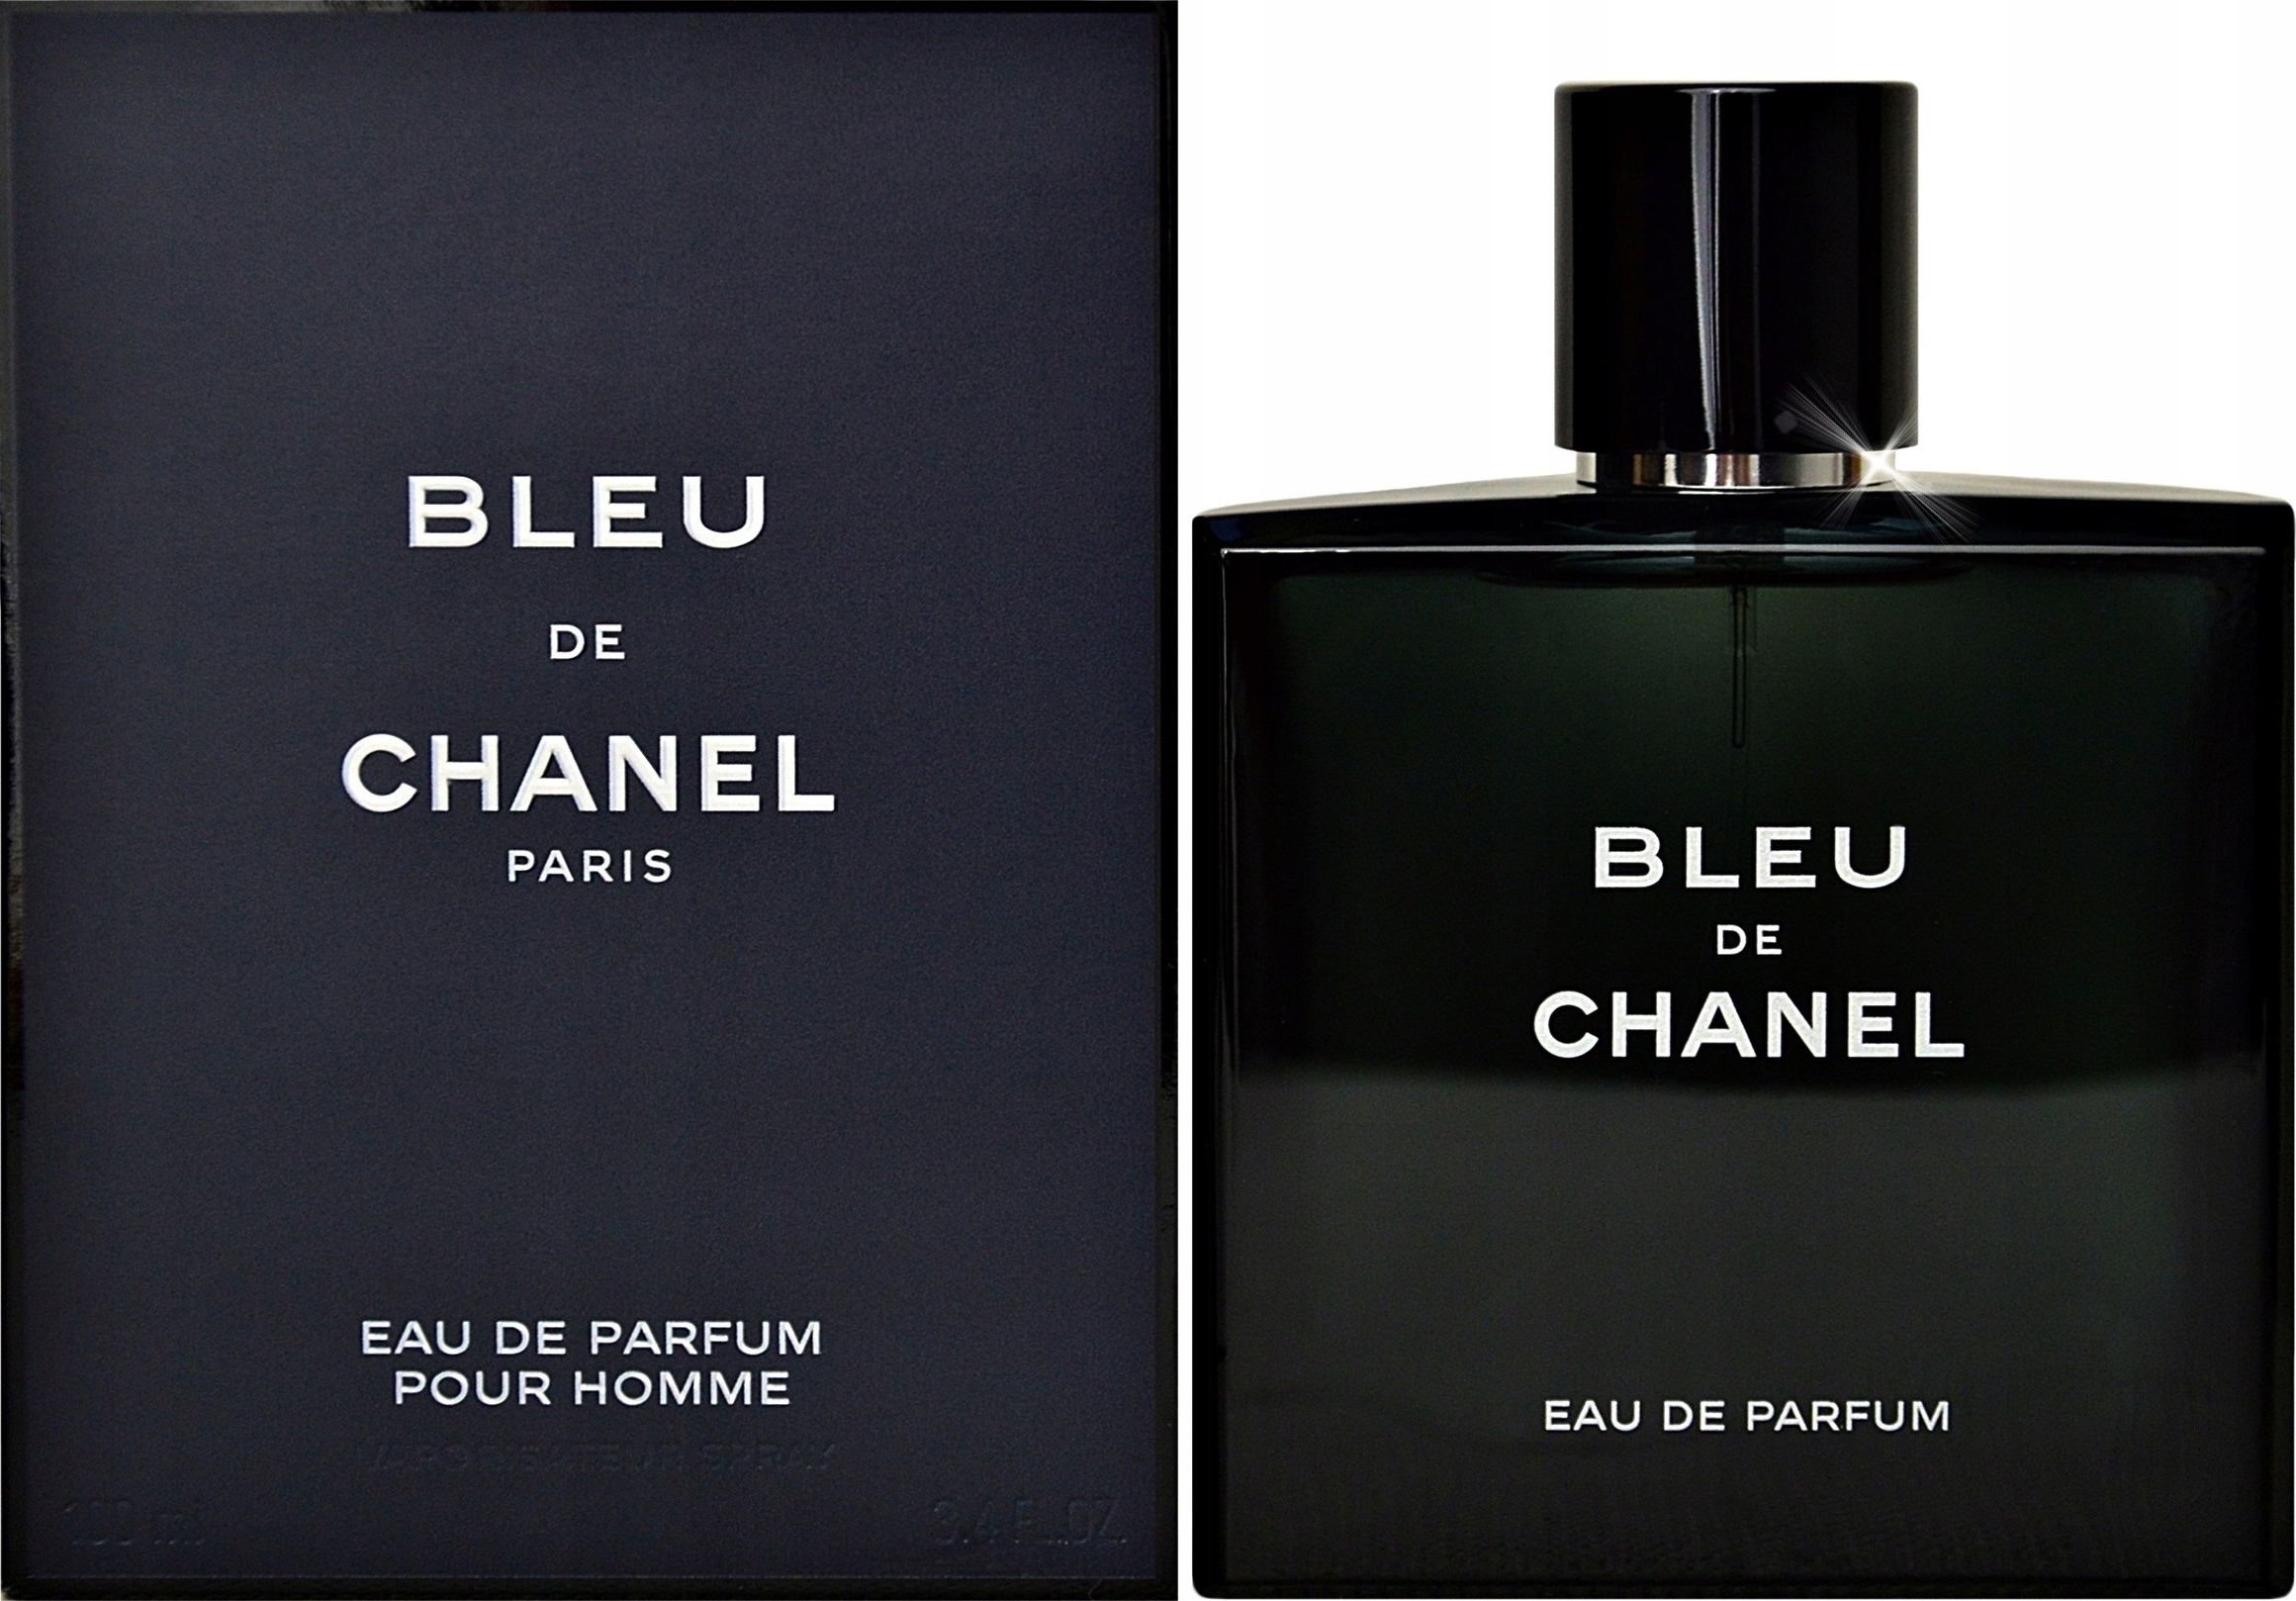 Chanel bleu de chanel 100. Chanel bleu de Chanel Parfum 100 ml. Blue Chanel 100 ml. Chanel Blue de Chanel 100ml. Chanel bleu de Chanel 50 ml.